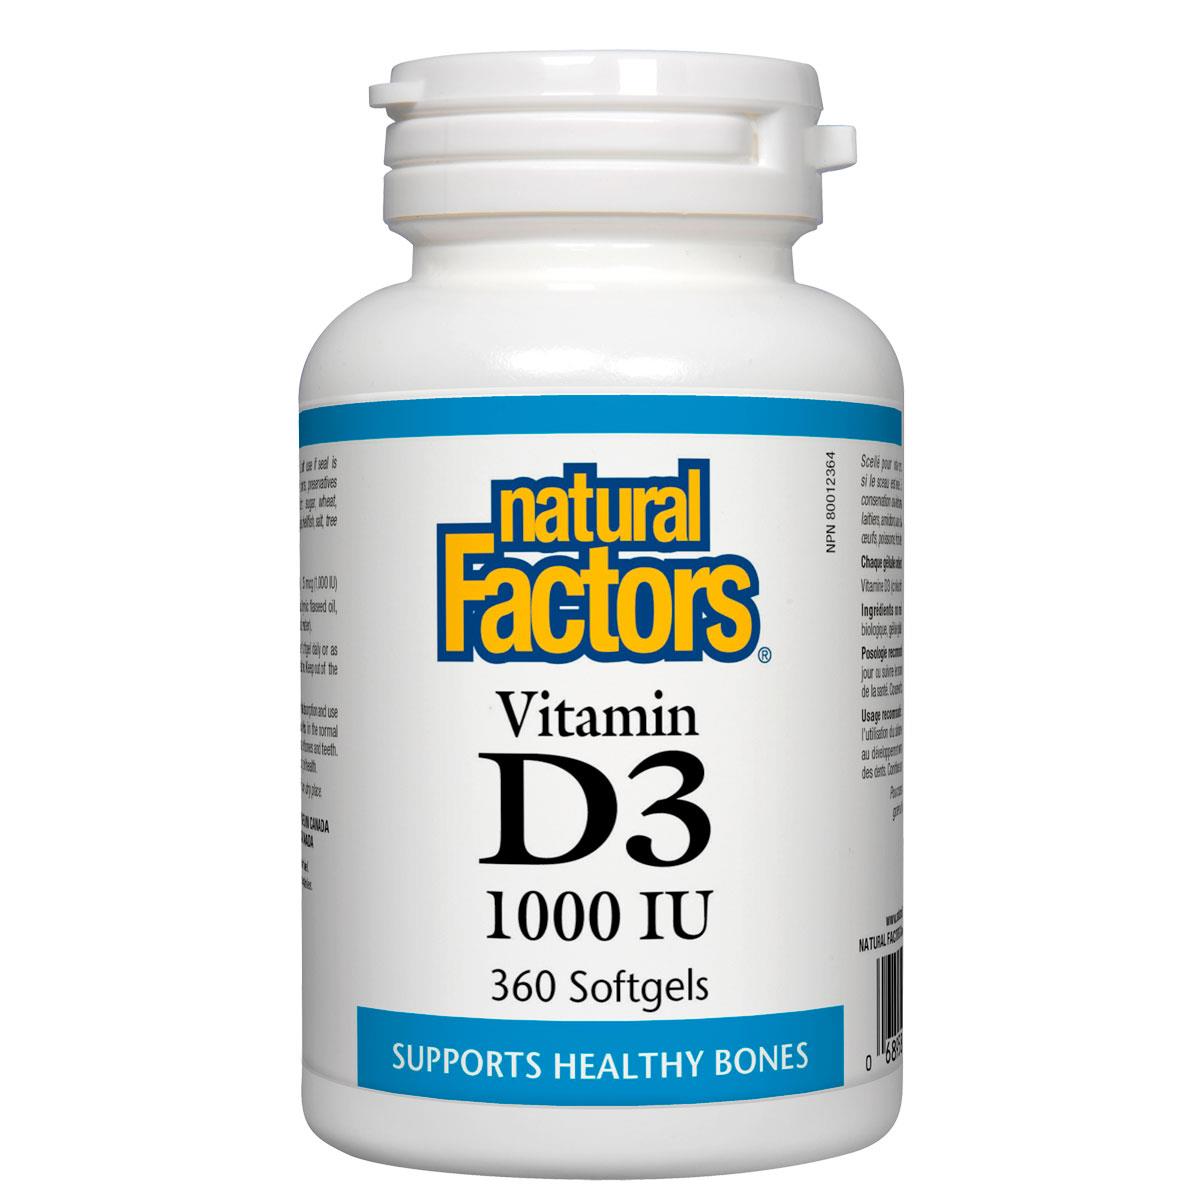 Natural Factors Vitamin D3, 1000IU, 360 Softgels